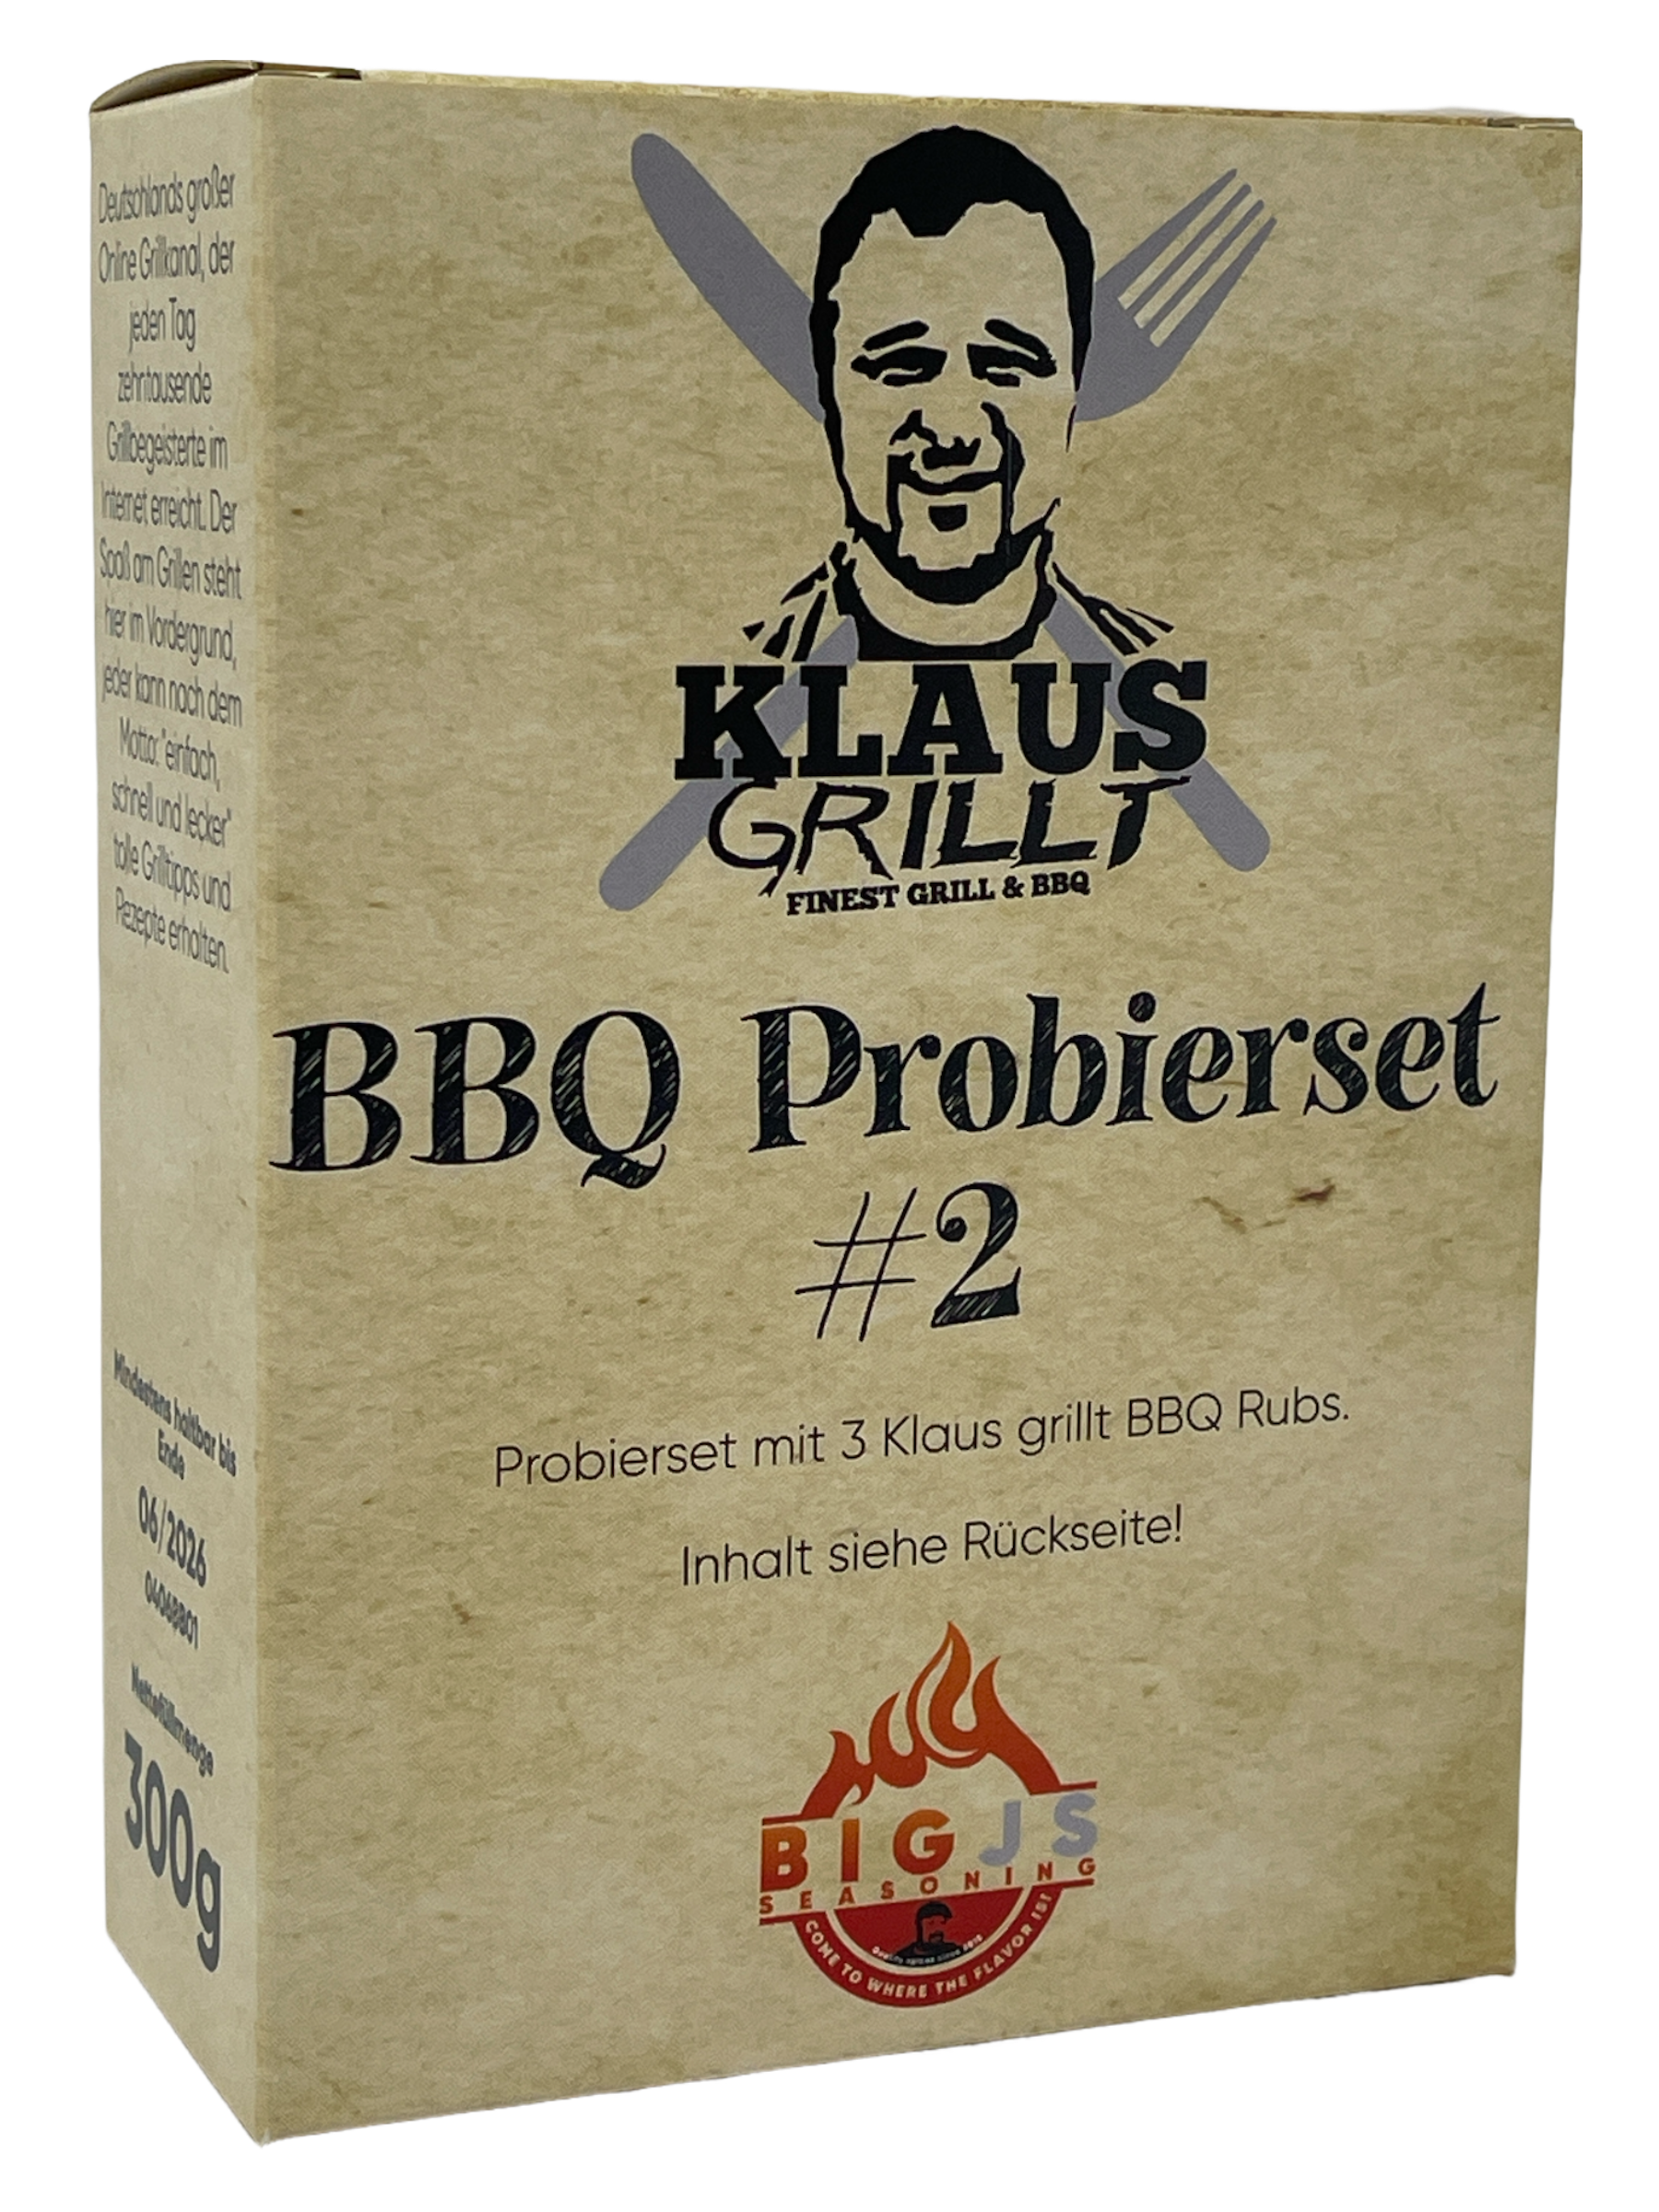 Klaus grillt BBQ Probierset #2